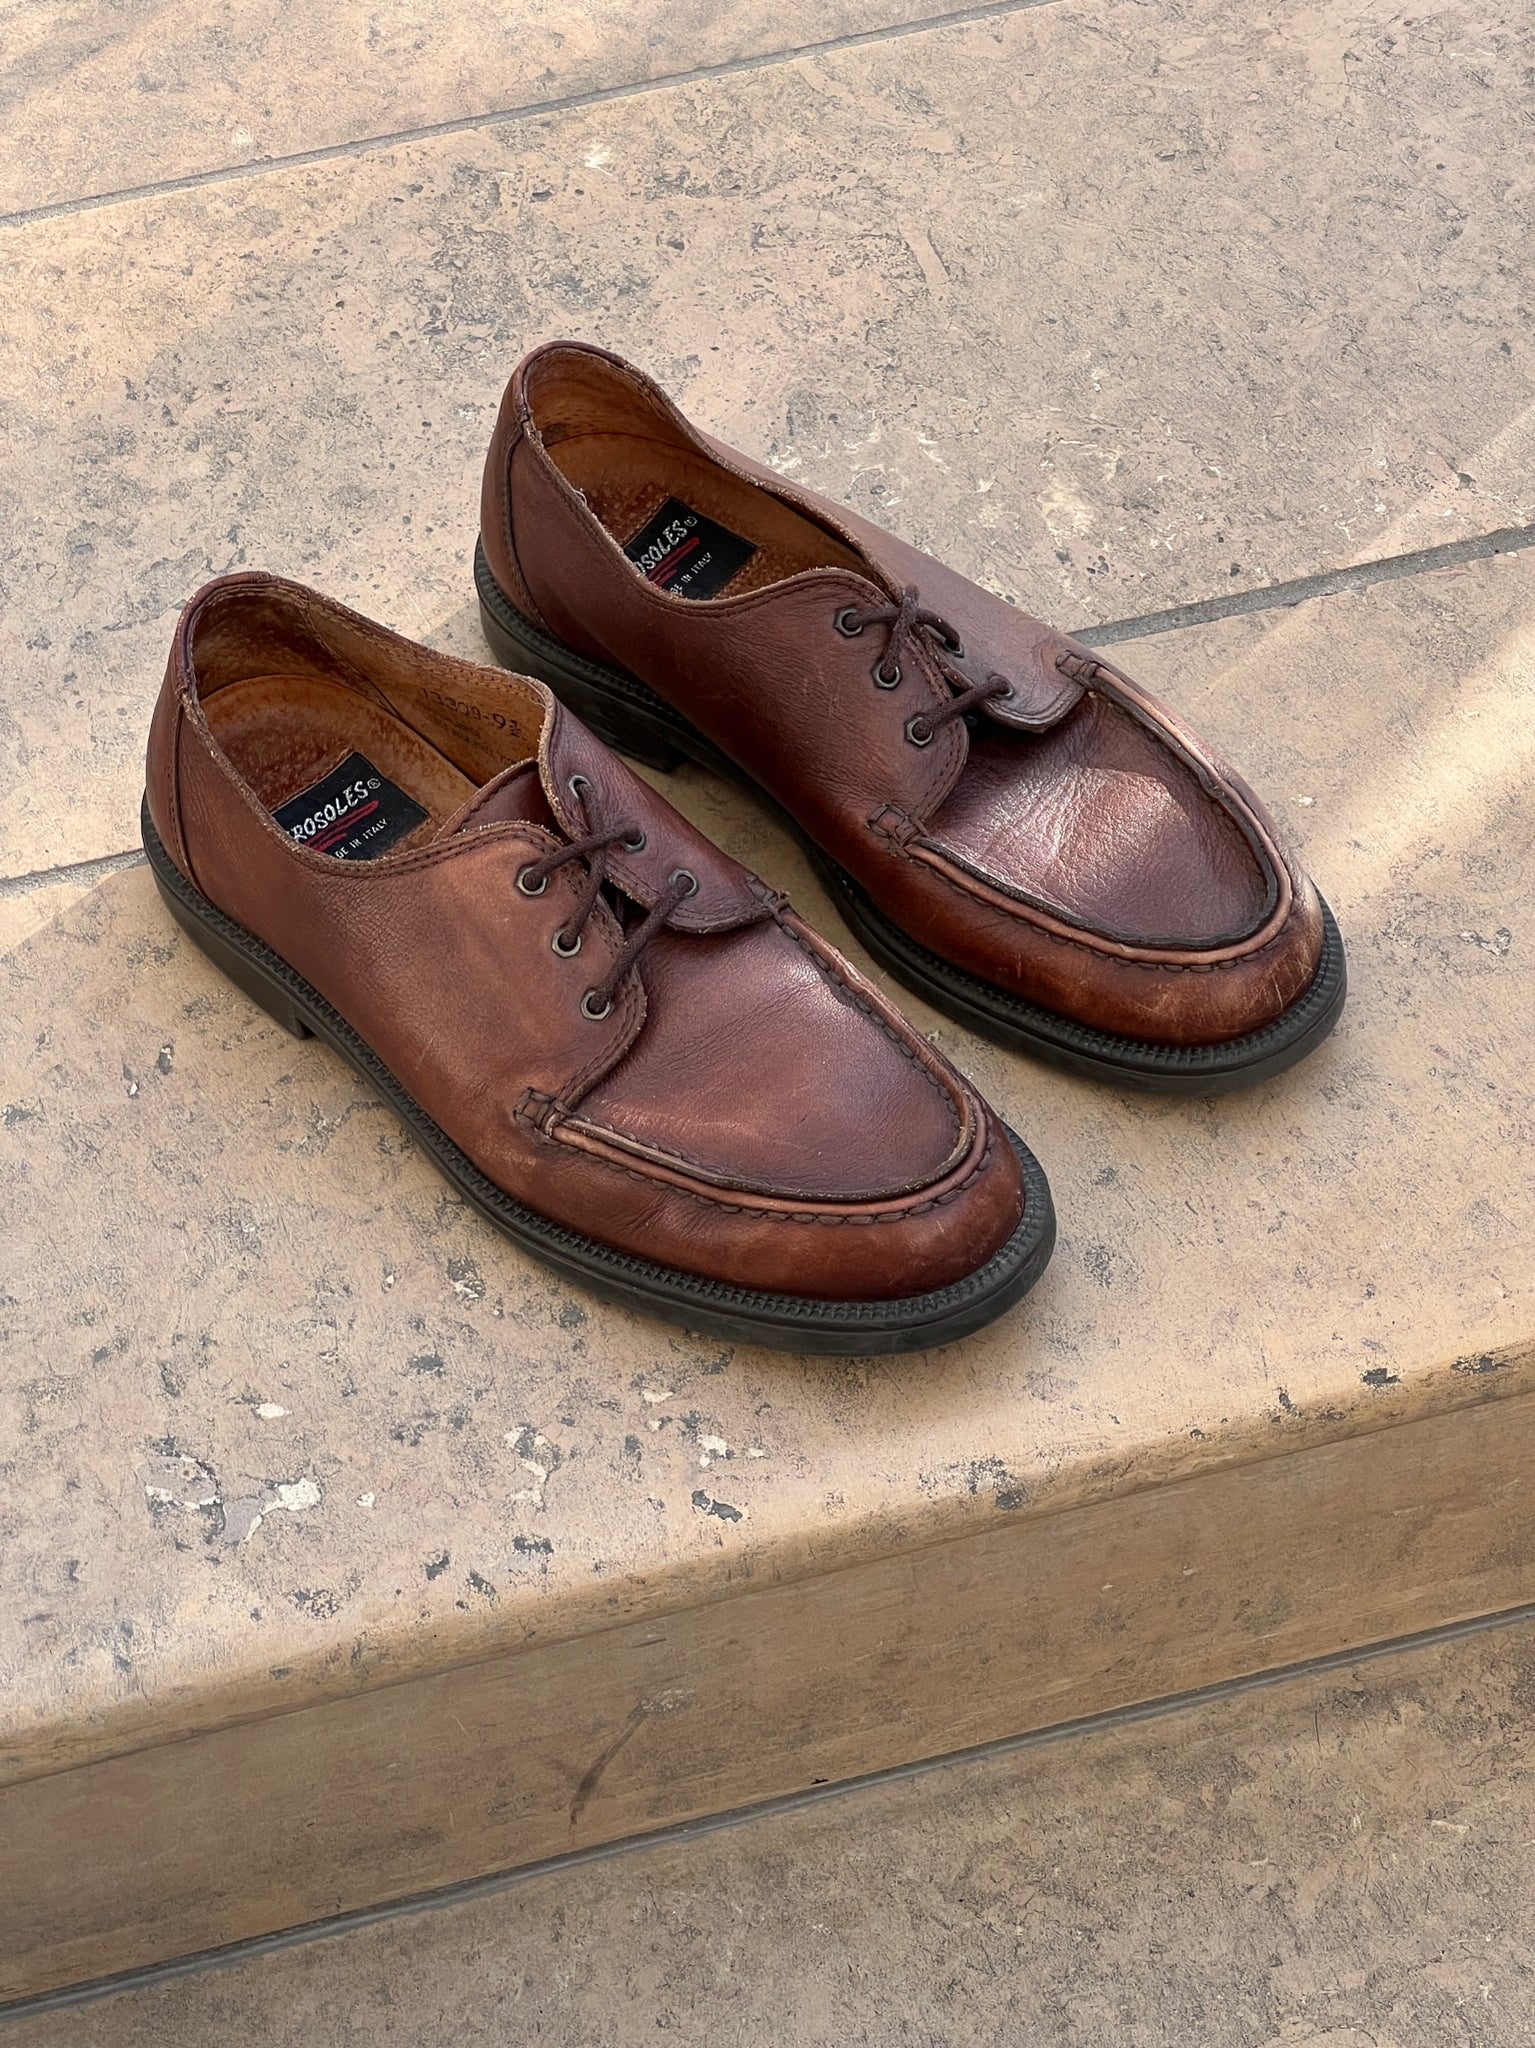 Vintage Italian Cinnamon Leather Shoes